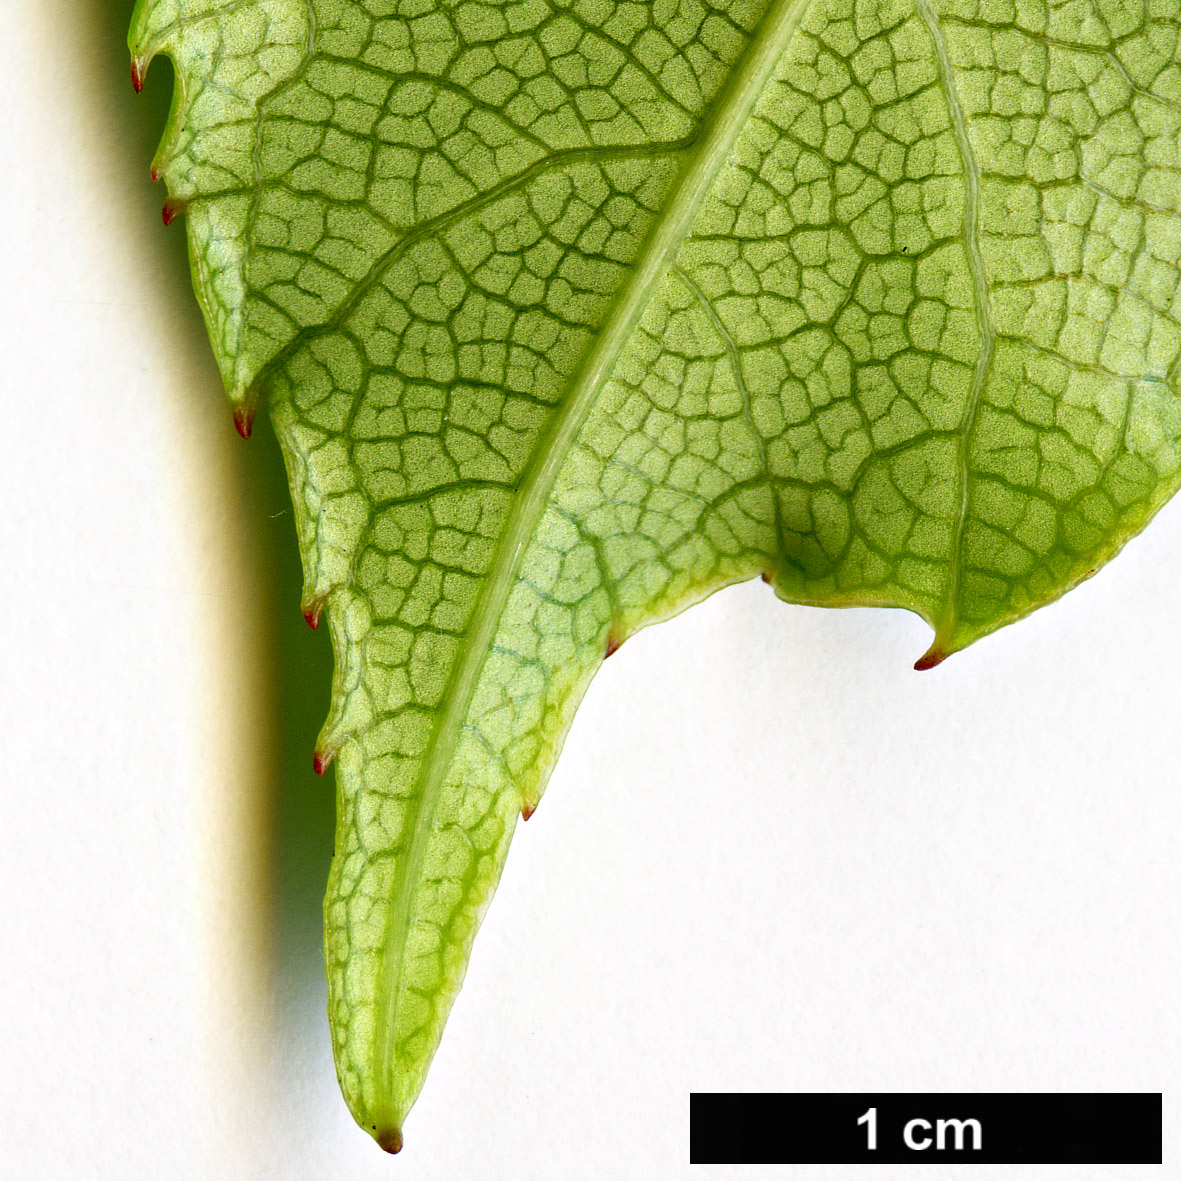 High resolution image: Family: Actinidiaceae - Genus: Actinidia - Taxon: rubricaulis - SpeciesSub: var. coriacea